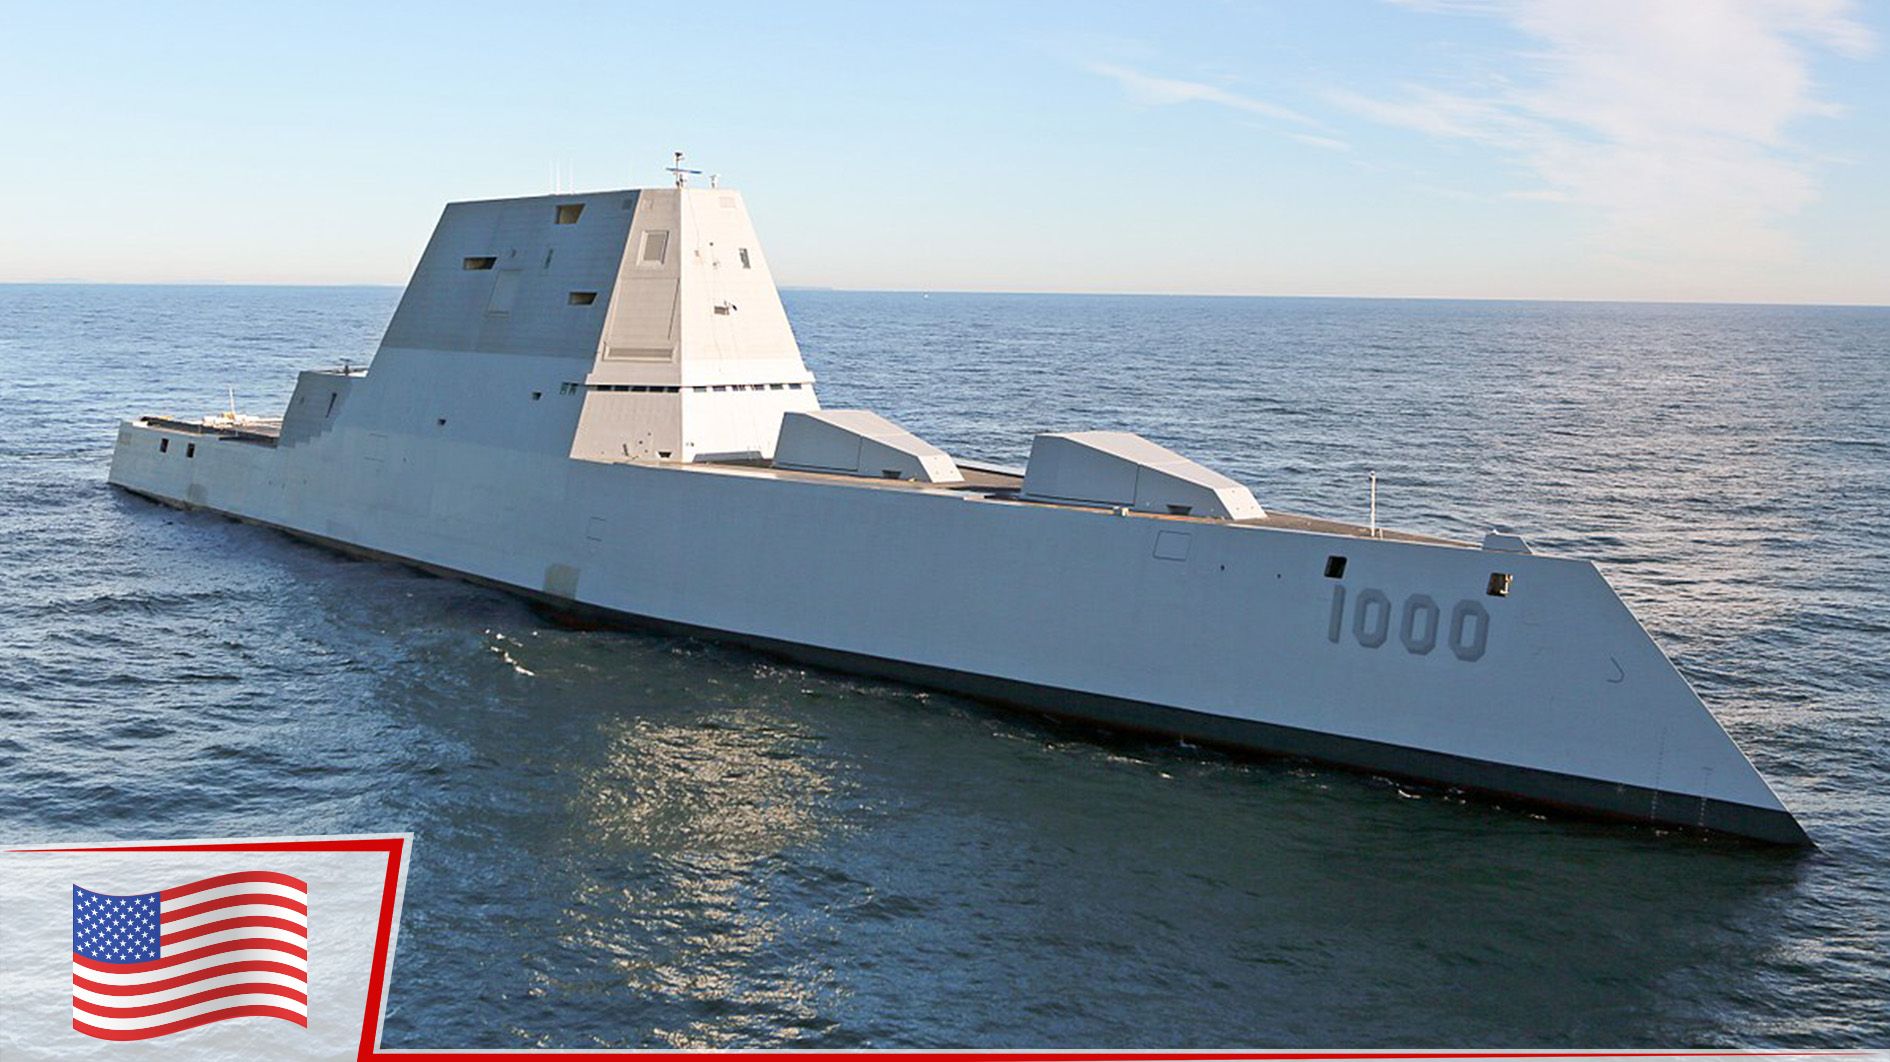 ABD'nin 4.4 milyar dolarlık destroyeri Zumwalt, ilk görevi için limandan ayrıldı